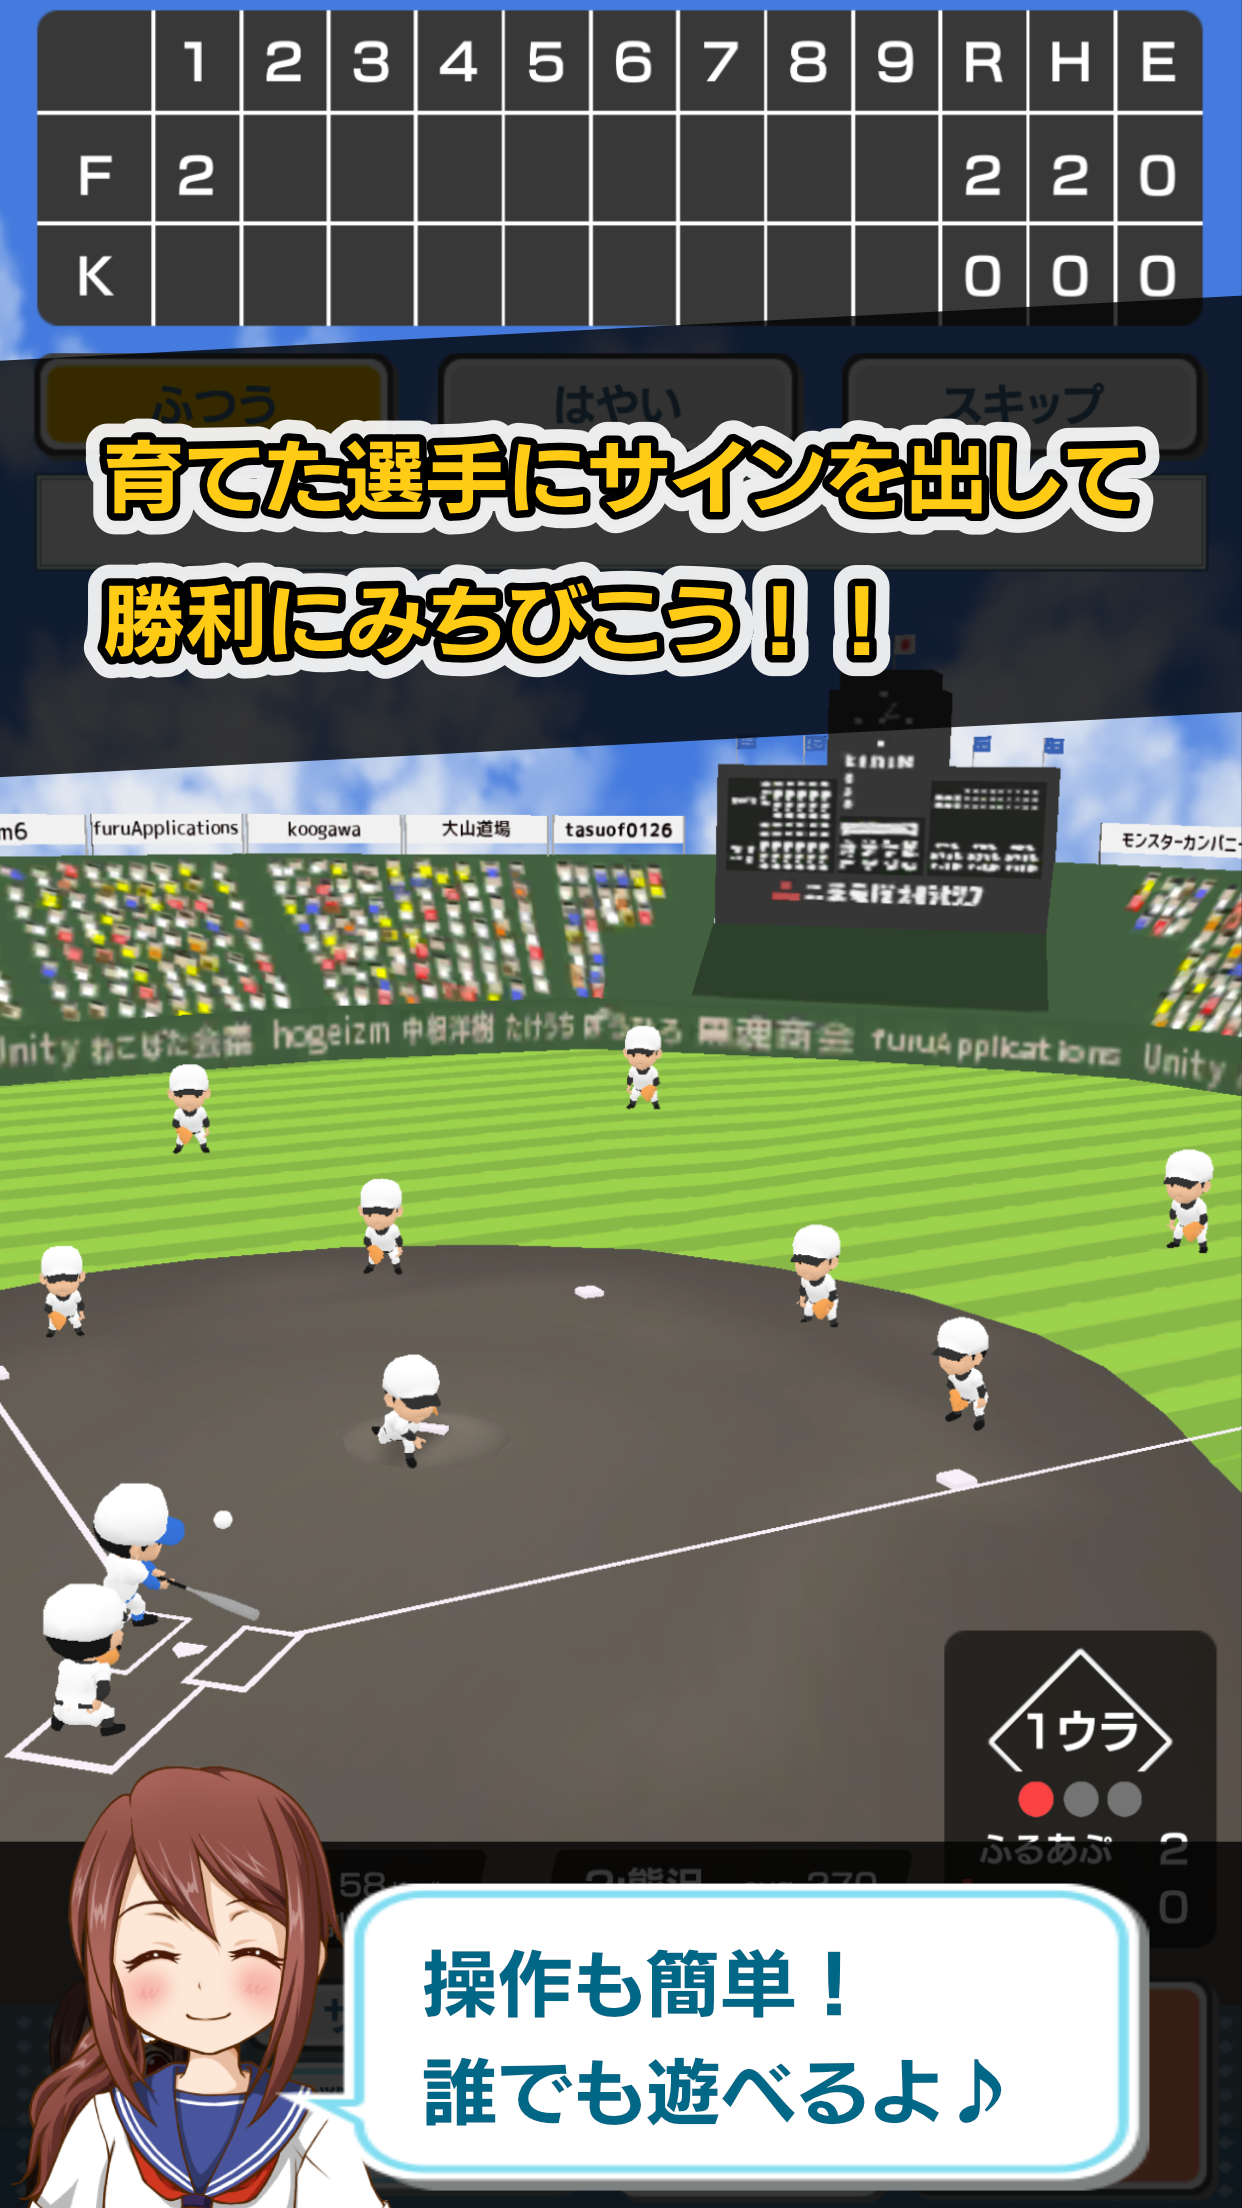 Screenshot 1 of Koshien - Bisbol Sekolah Menengah 2.3.9